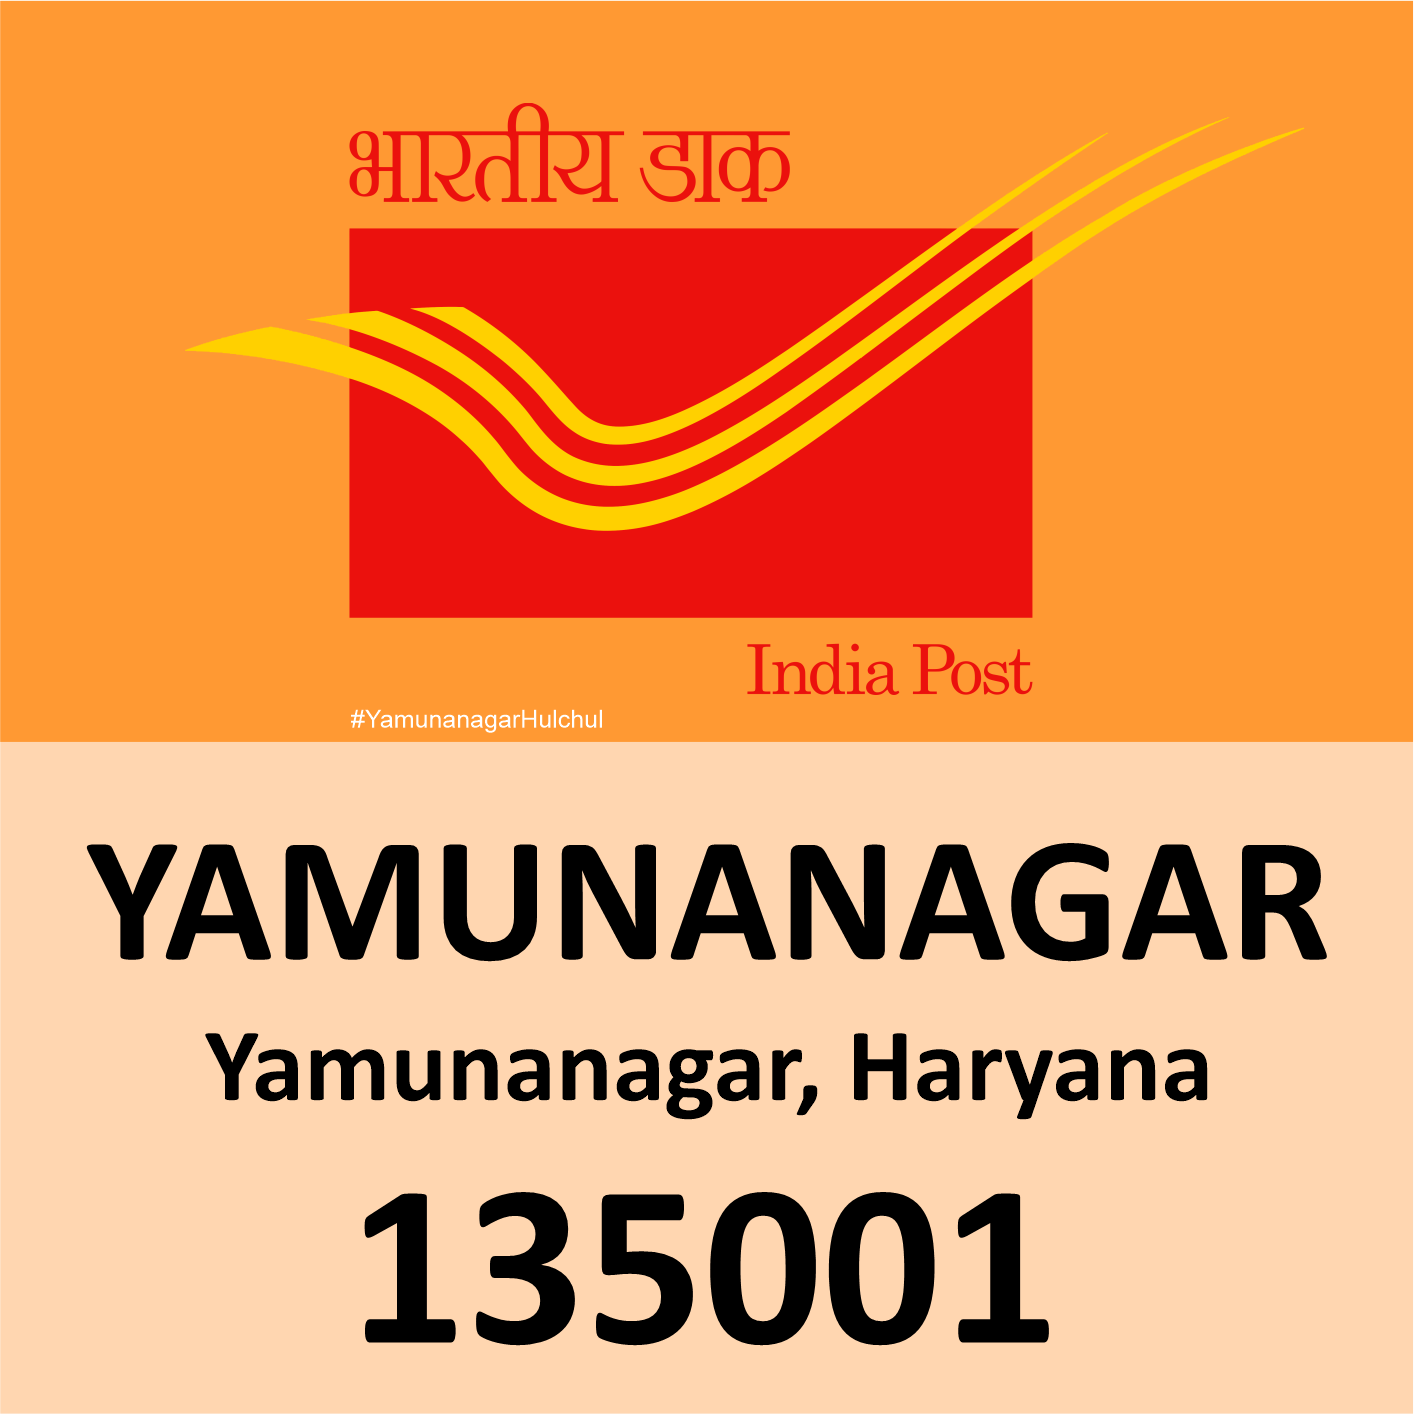 Pin Code of Yamunanagar is 135001, Haryana, #YamunanagarHulchul, #यमुनानगरहलचल, #PanditKhabri, Pandit Khabri, Pin Code of Yamunanagar, Haryana,